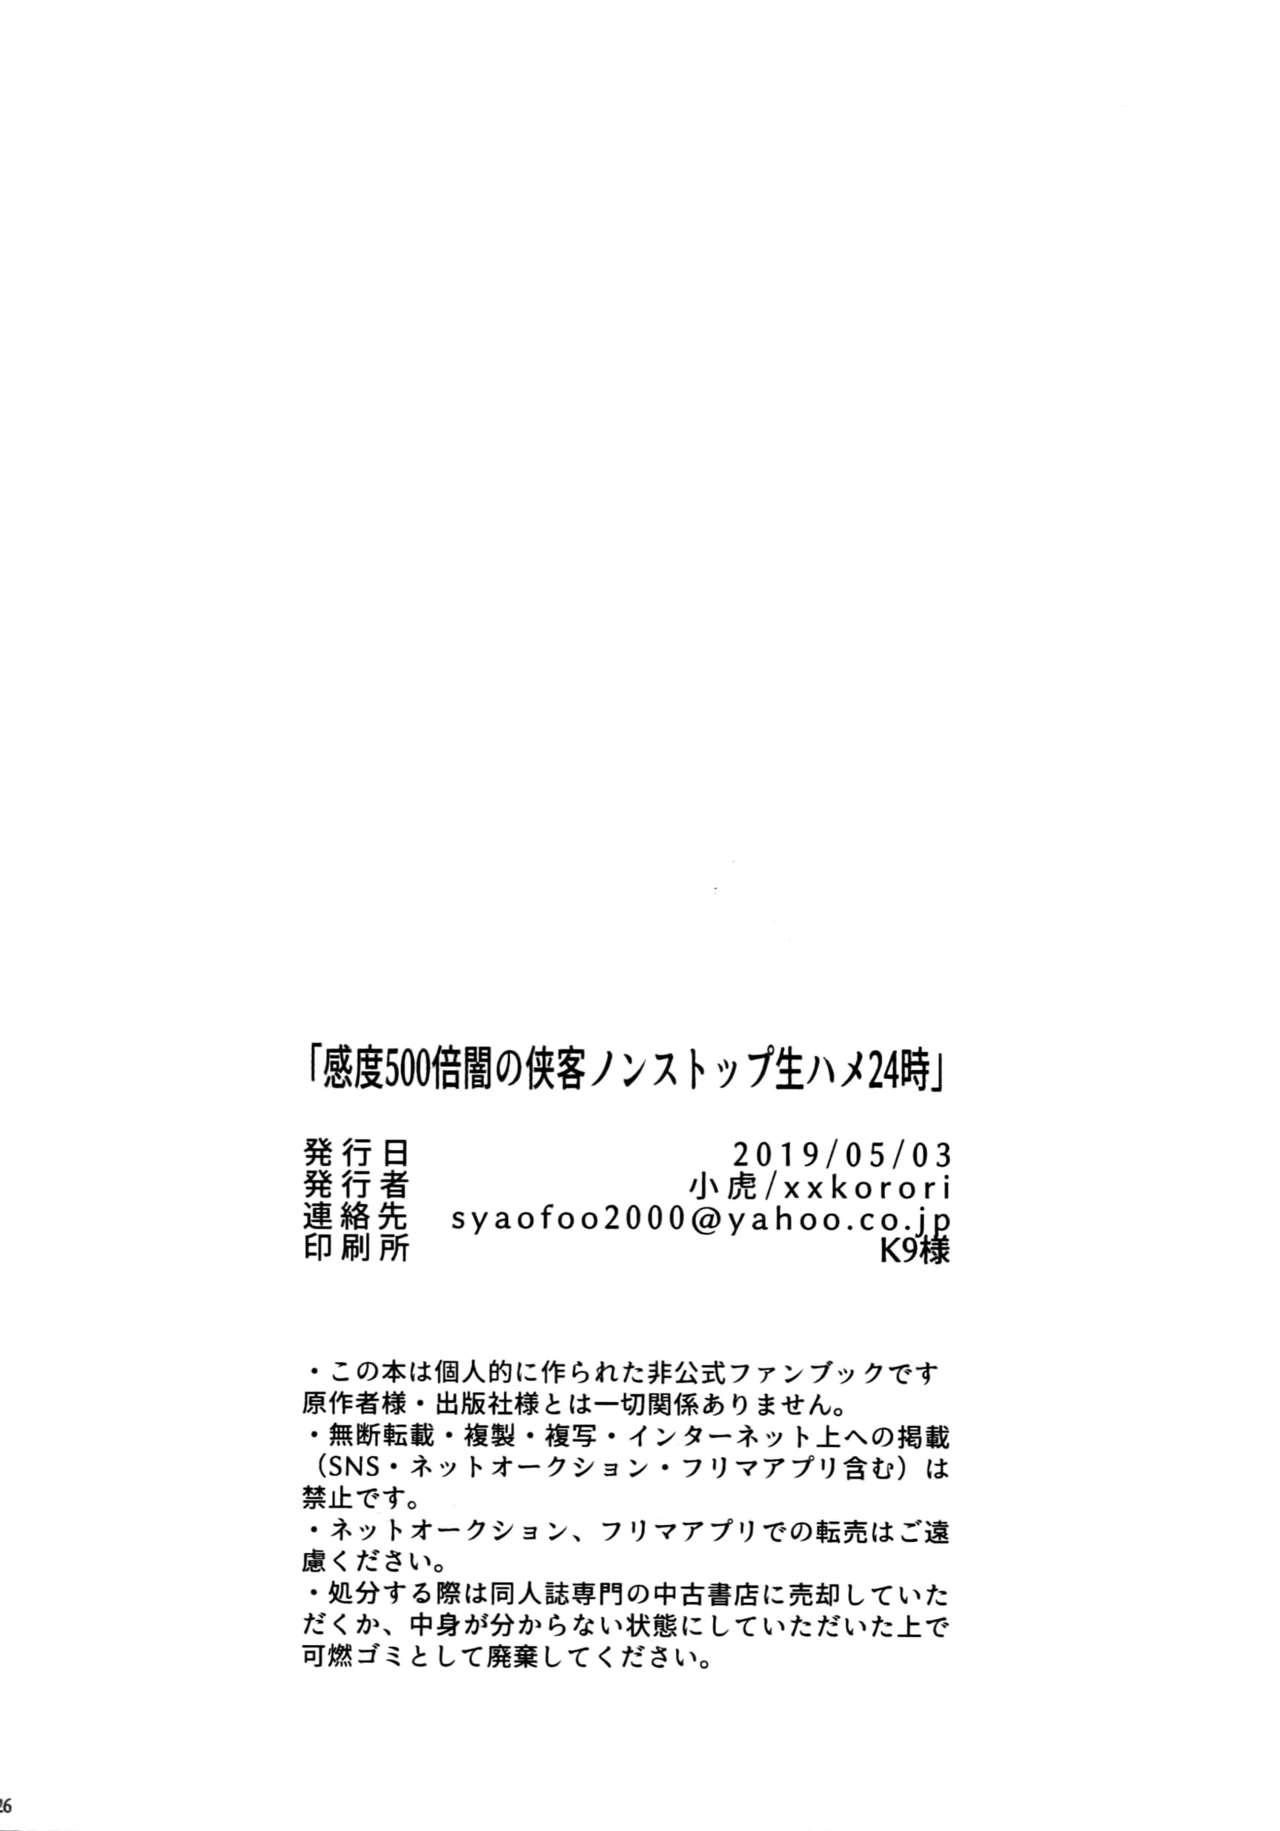 Orgasmus [XXkorori (Ko Tora)] Kando 500-bai Yami no Kyoukaku Nonstop Namahame 24-ji (Fate Grand Order) - Fate grand order Neighbor - Page 26